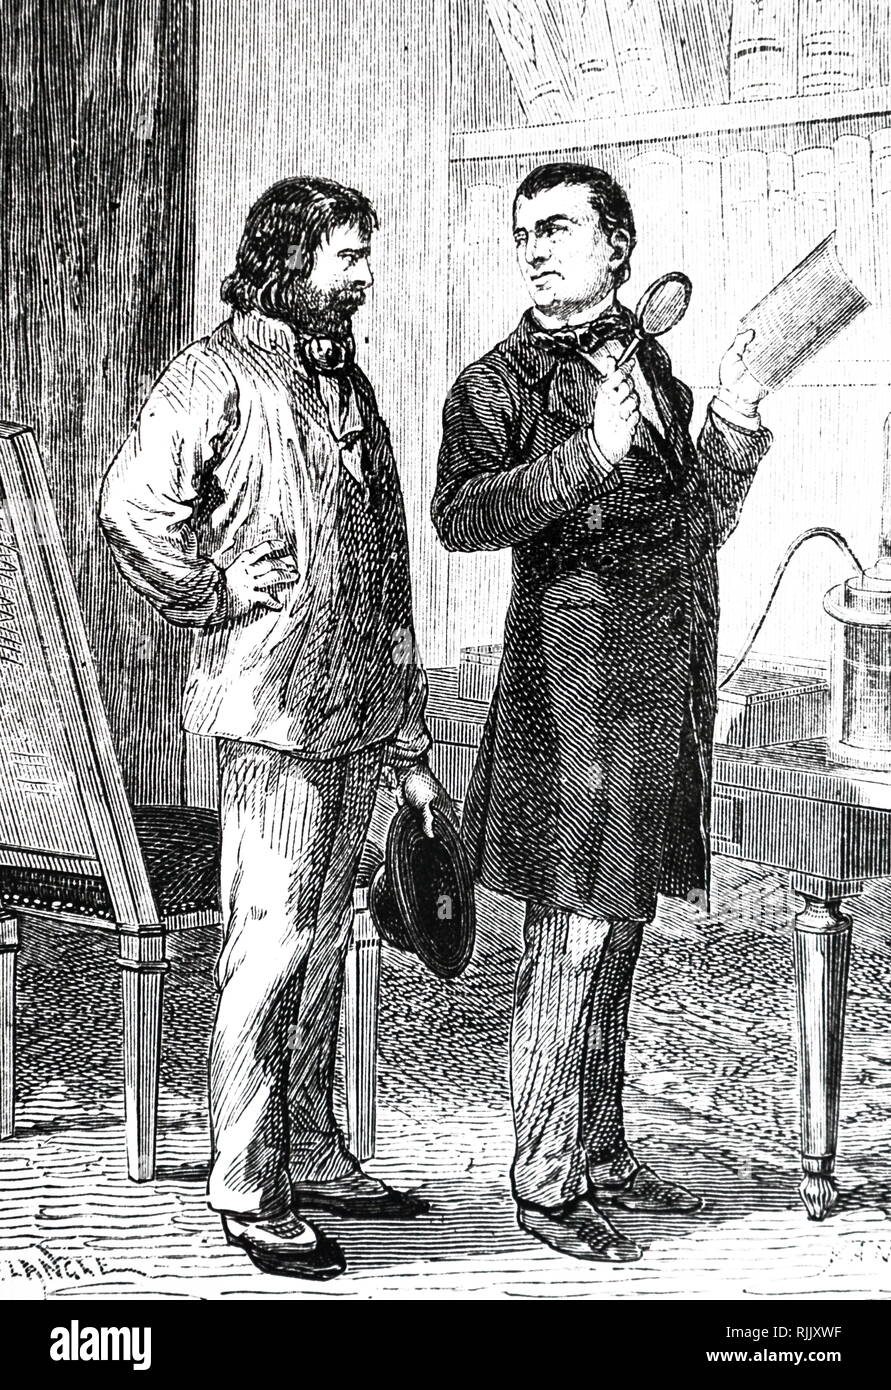 L'artista impressione di B. S. Jacobi (1808-1874) alla scoperta di elettroplaccatura in 1837. Datata del XIX secolo Foto Stock